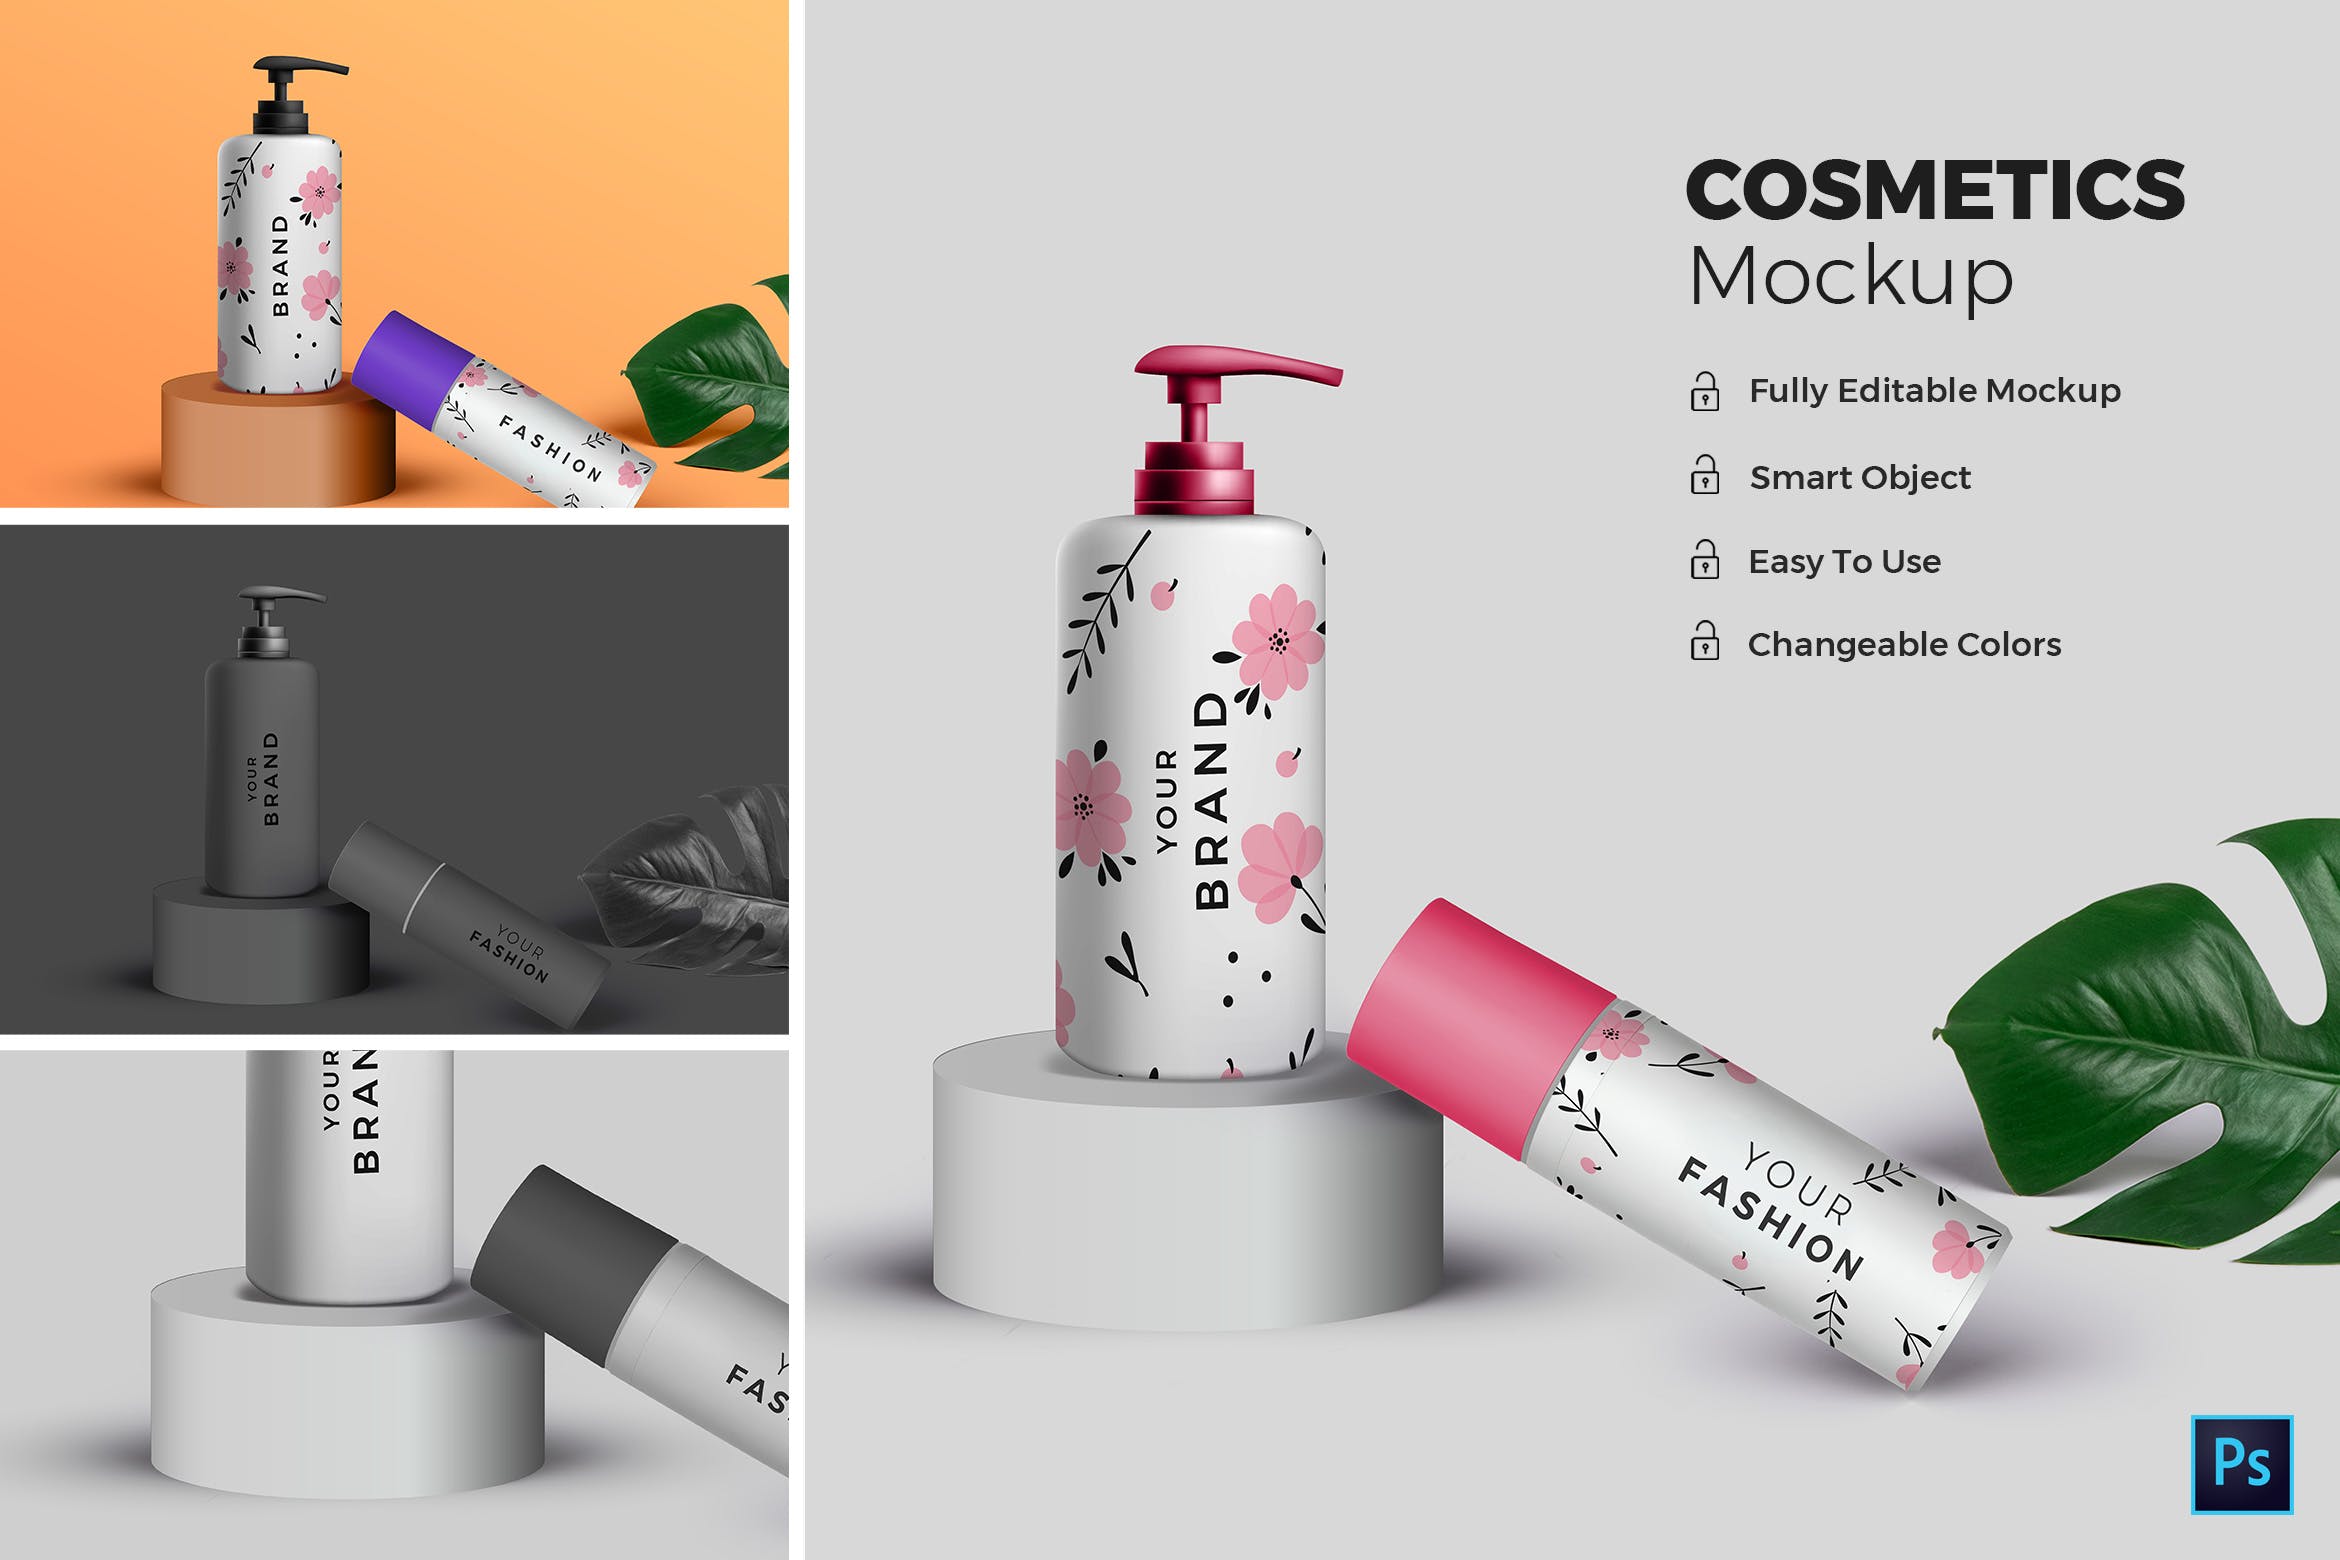 高端化妆品包装外观设计效果图16图库精选 Cosmetic Mockup插图